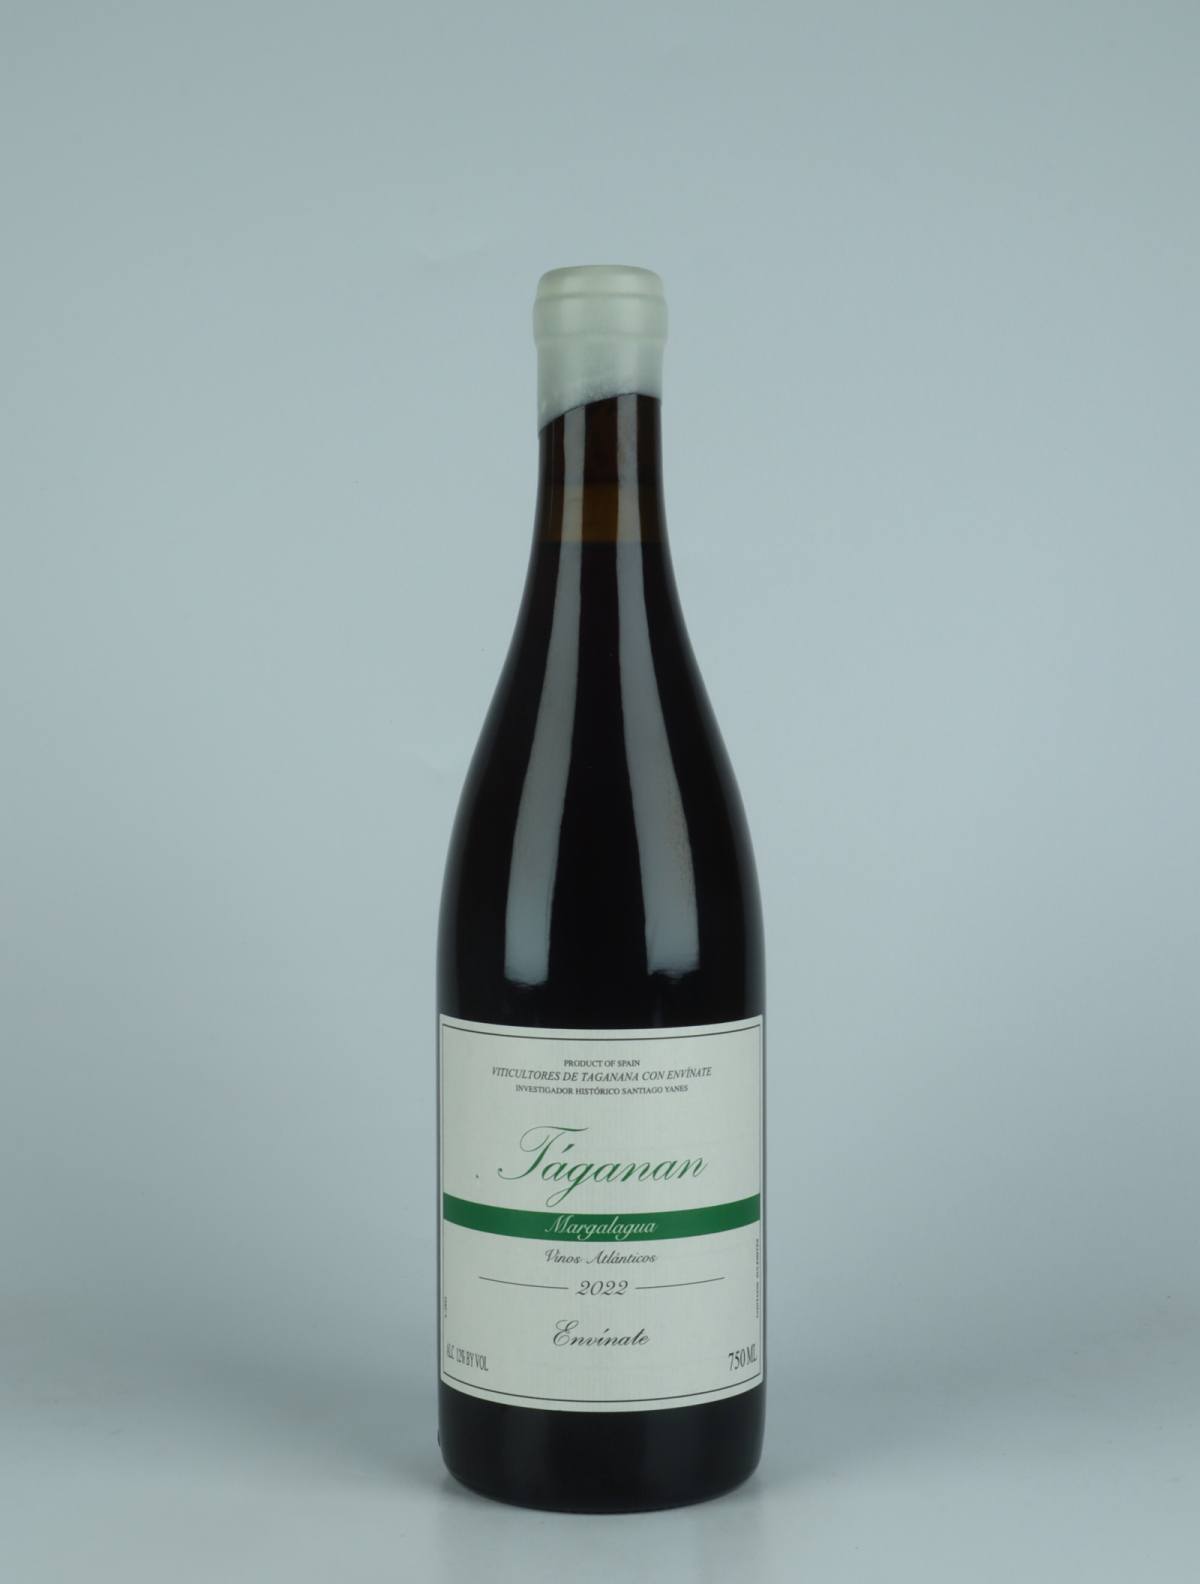 En flaske 2022 Taganan Margalagua - Tenerife Rødvin fra Envínate, Tenerife i Spanien